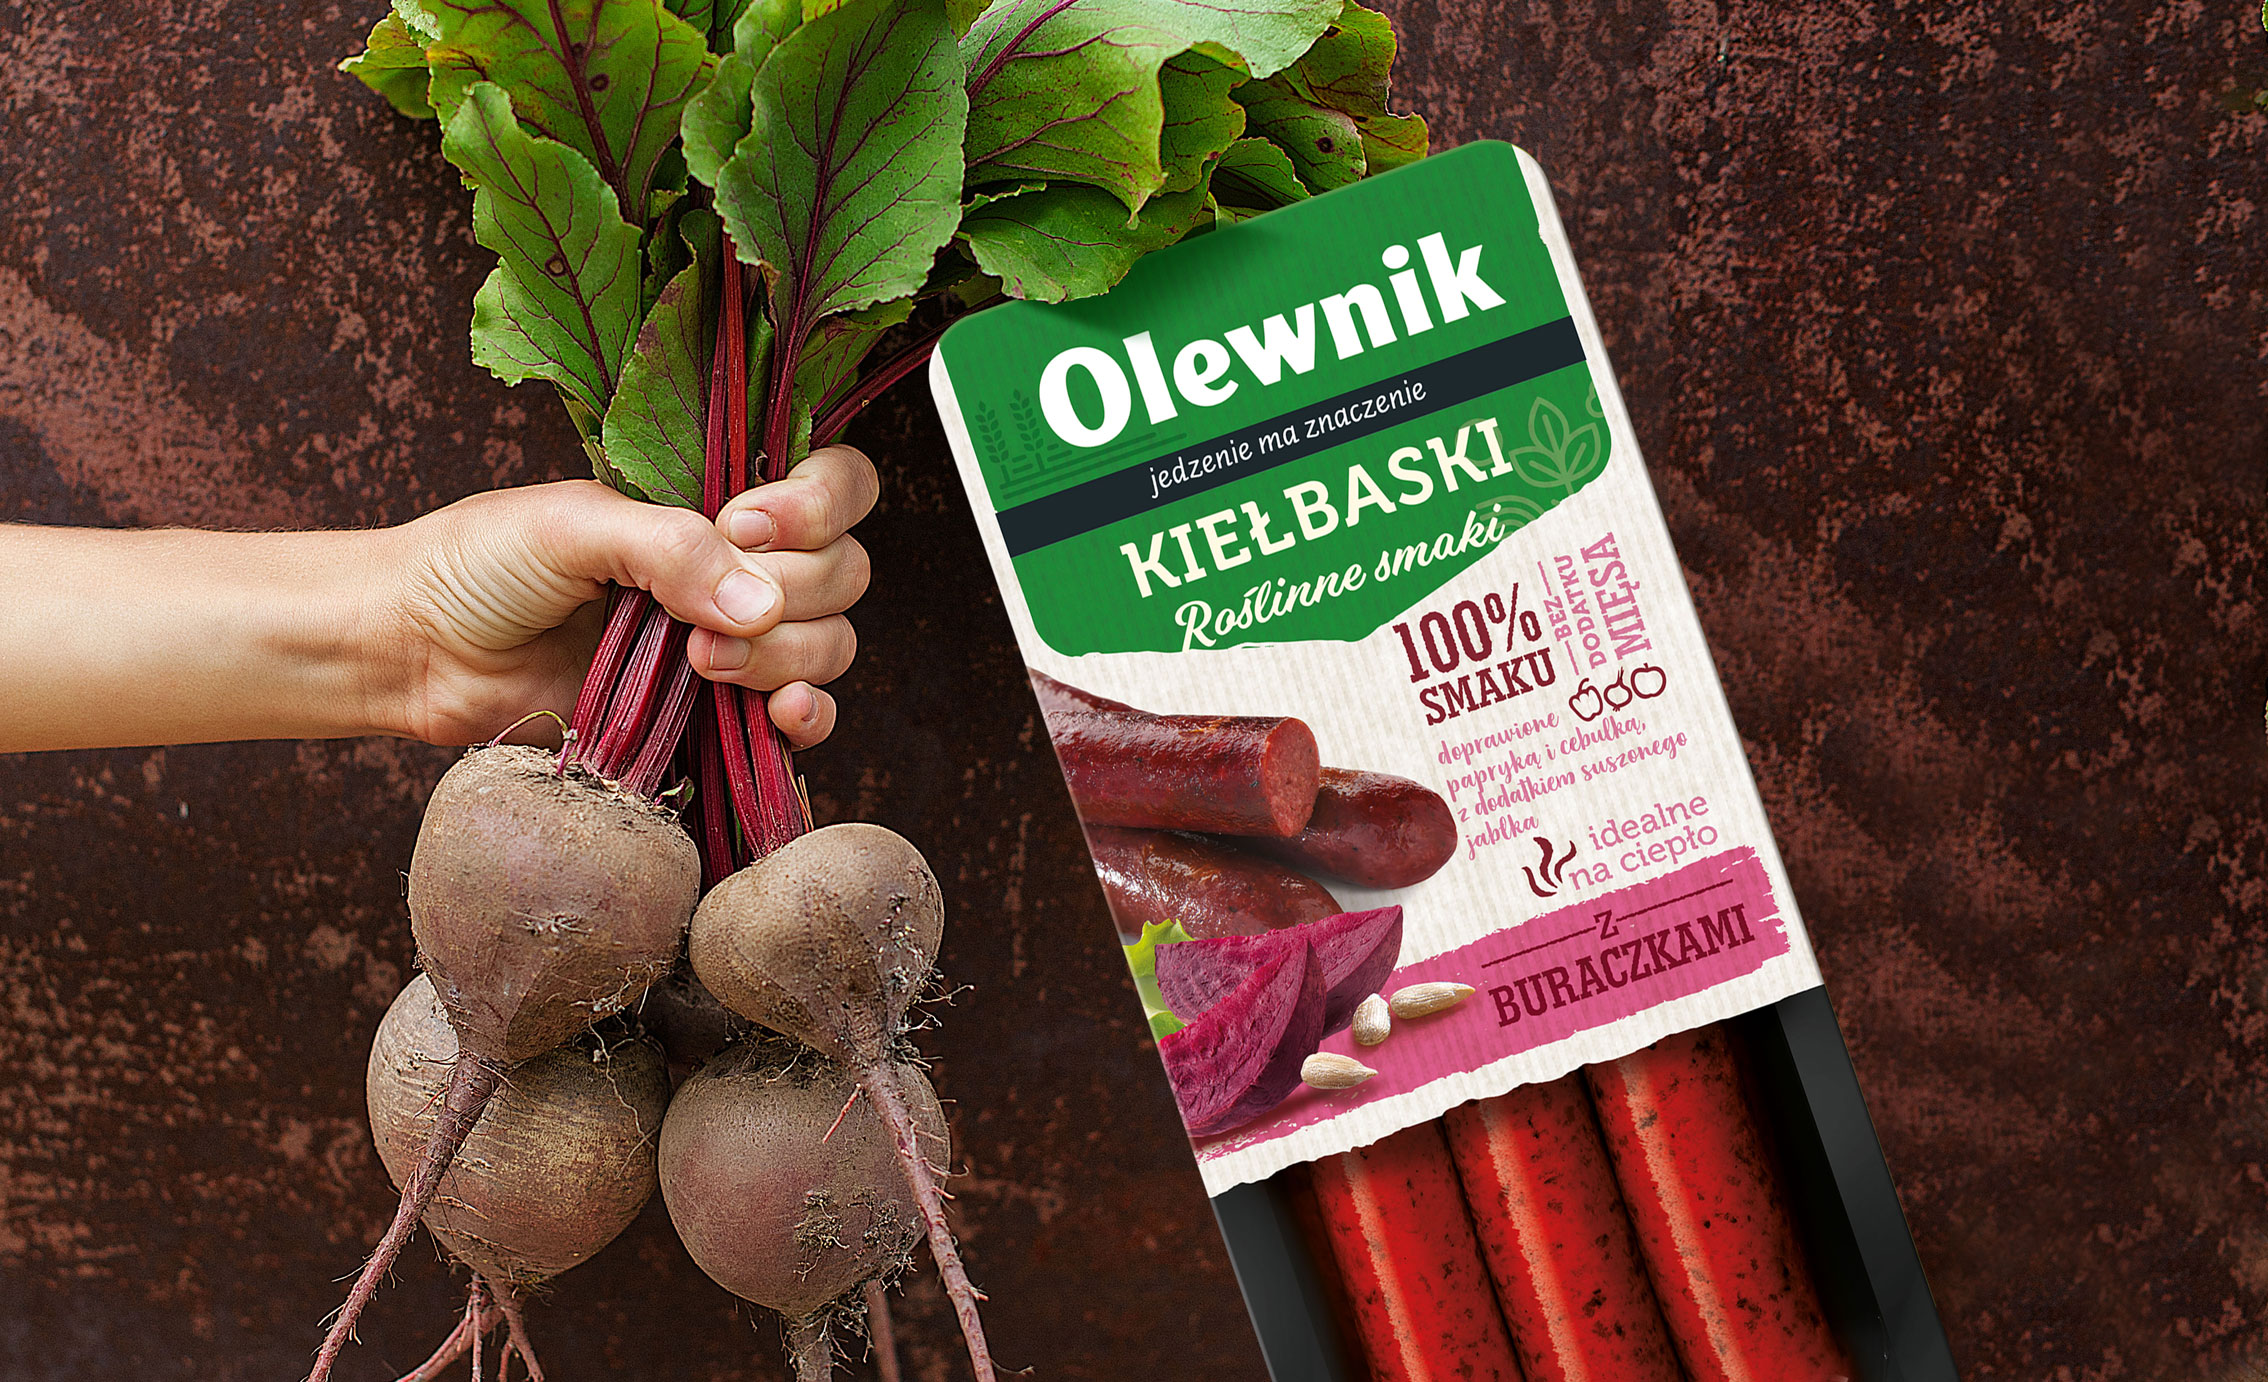 Produkt roślinny Olewnik - kiełbaski z buraka